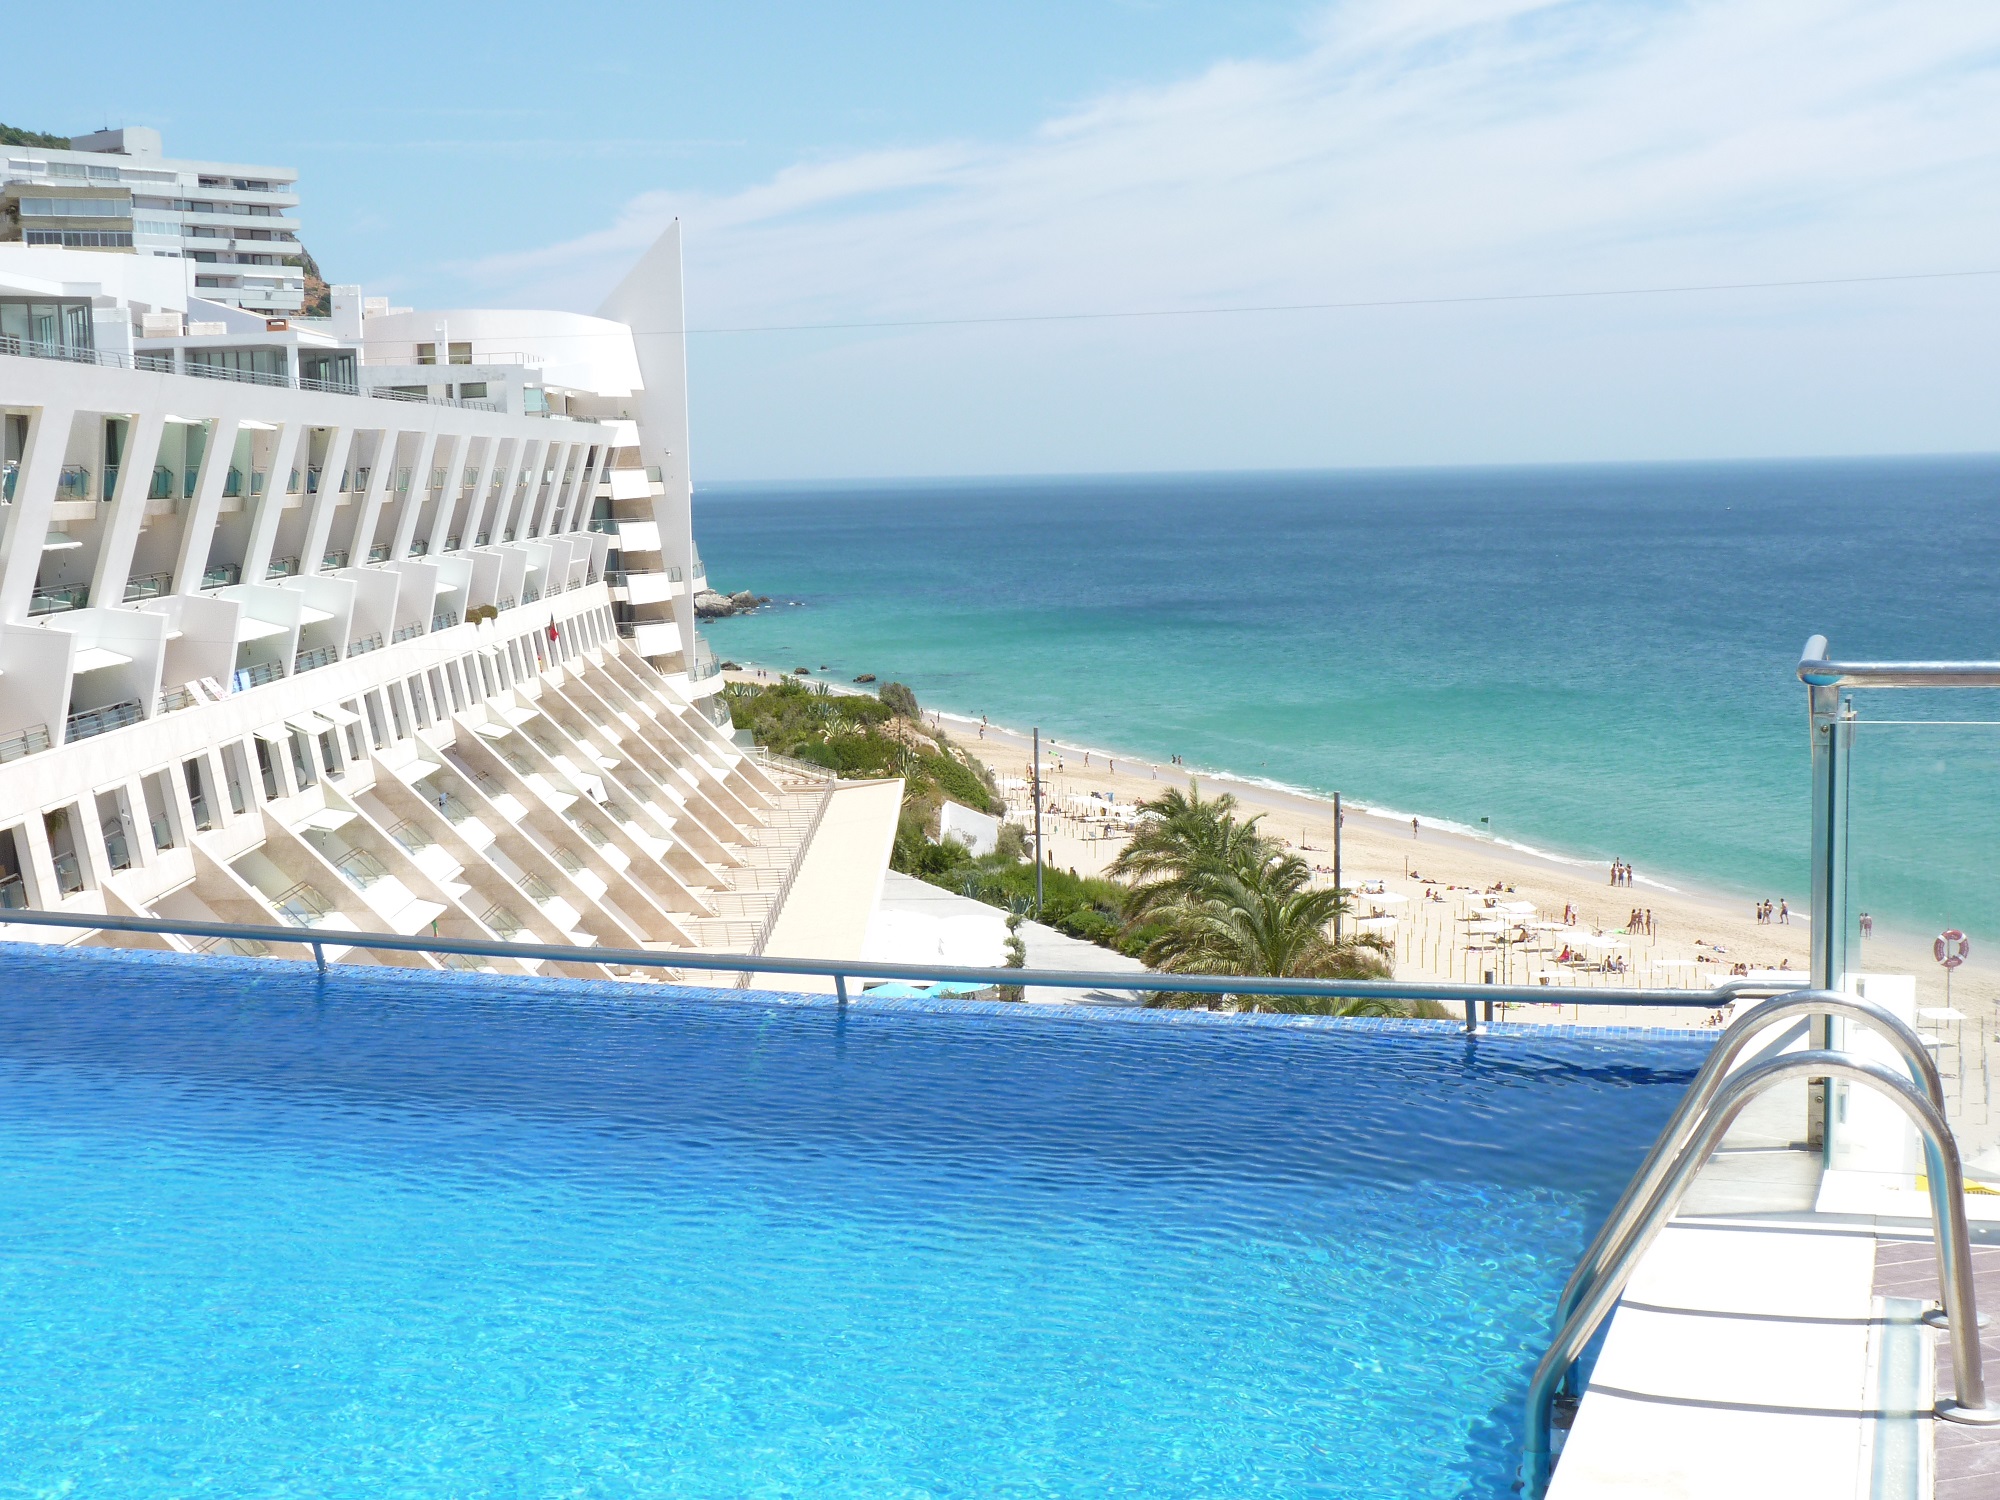 Sesimbra Hotel & SPA med utsikt över en pool, stranden och havet en solig dag.